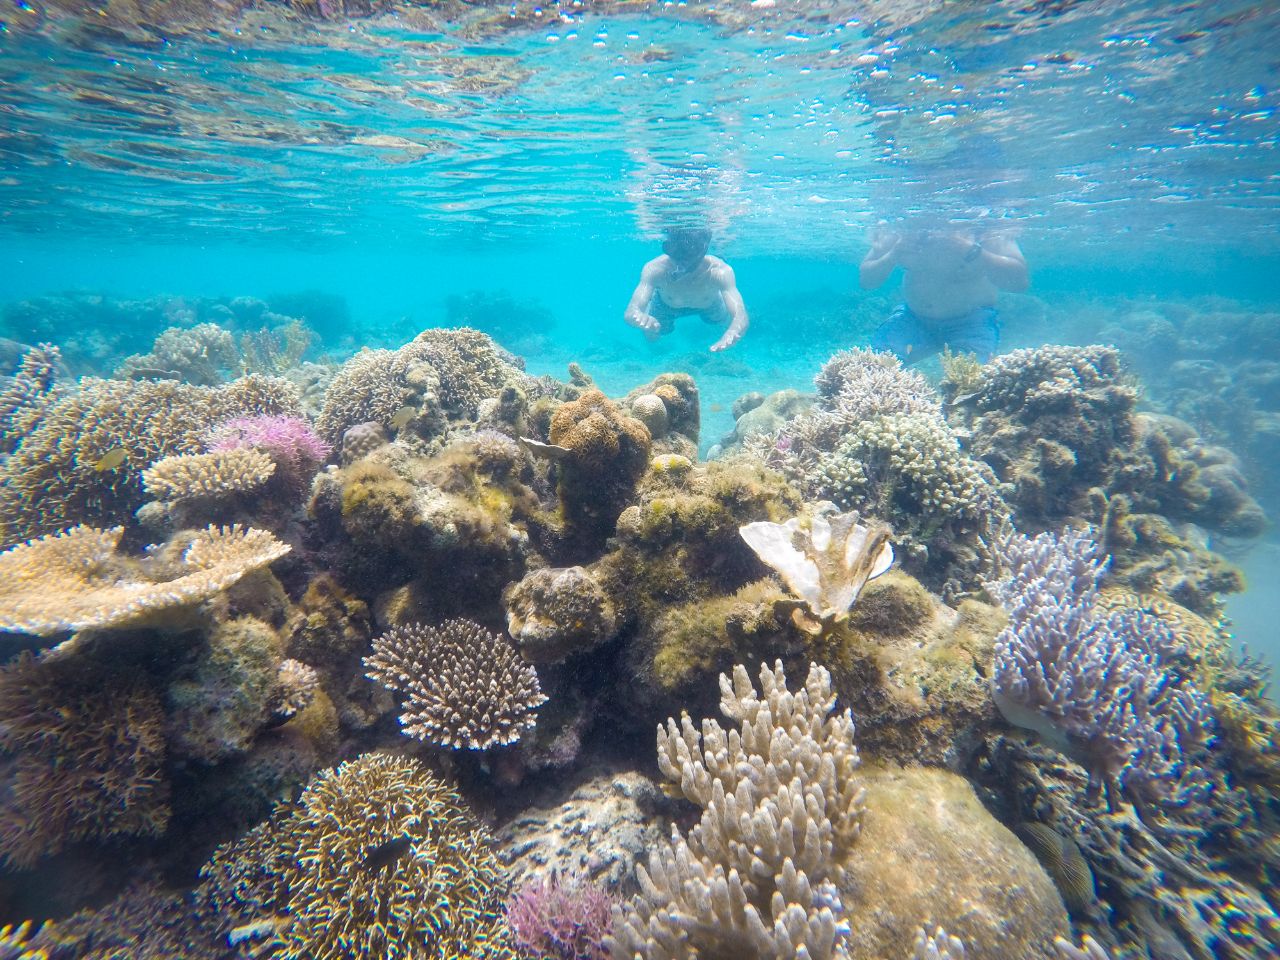 Beragam spesies terumbu karang dan ikan di kedalaman Teluk Saleh yang mencapai 200 meter. foto:kemenpar